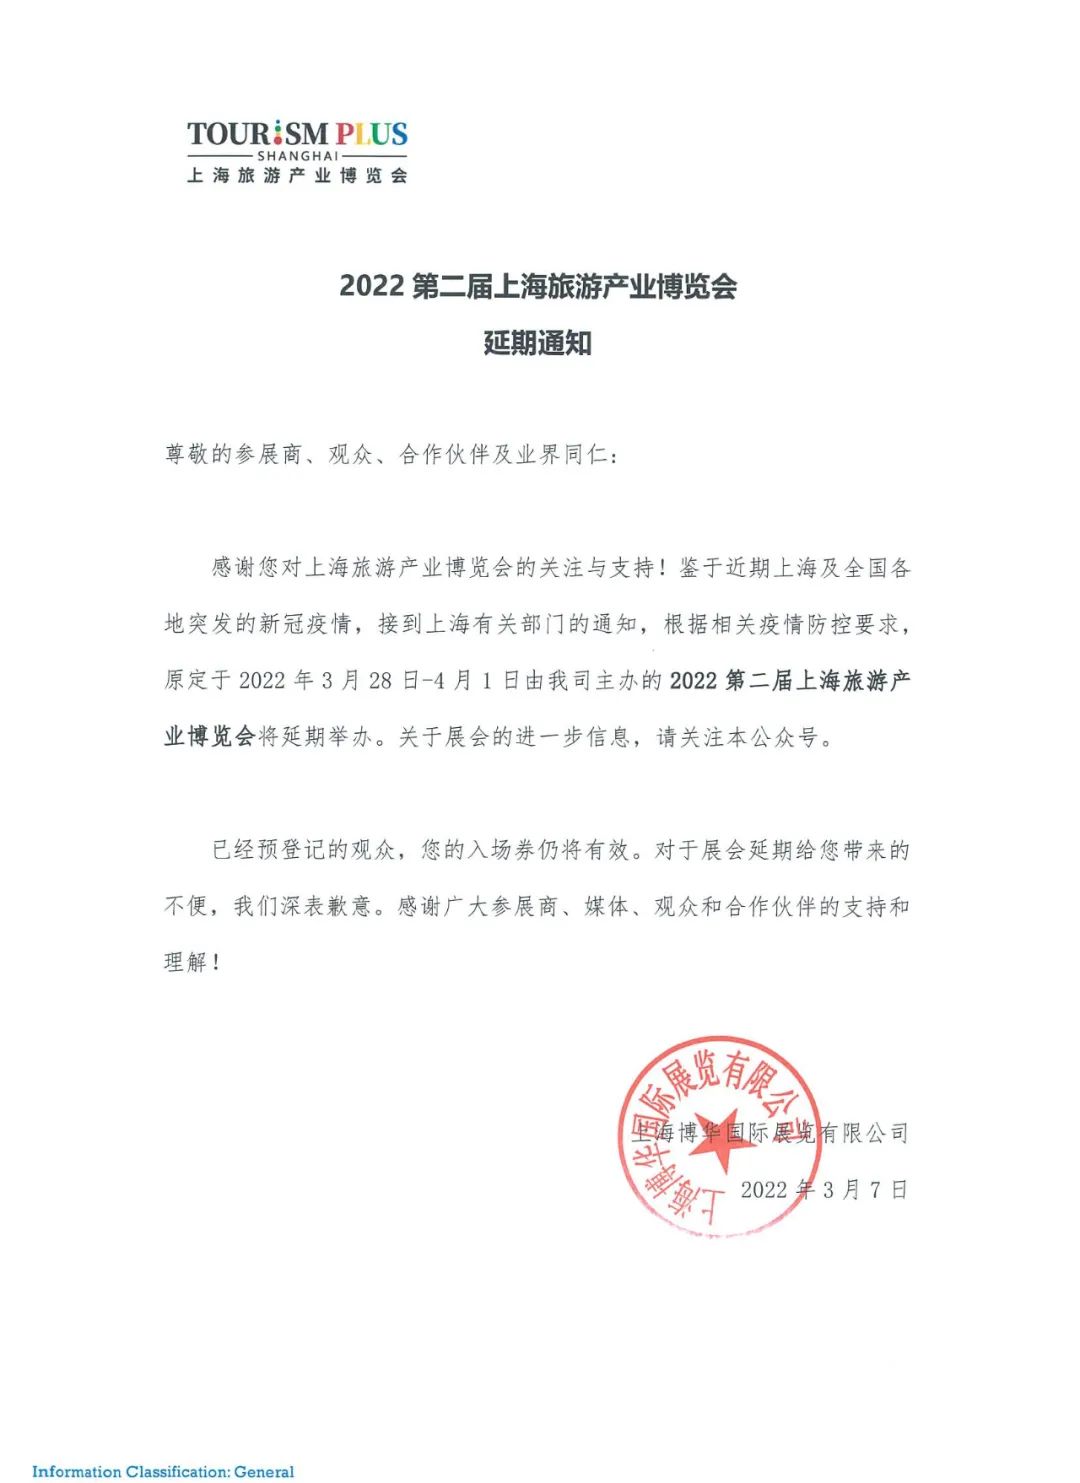 受疫情影响，2022上海旅博会确定延期